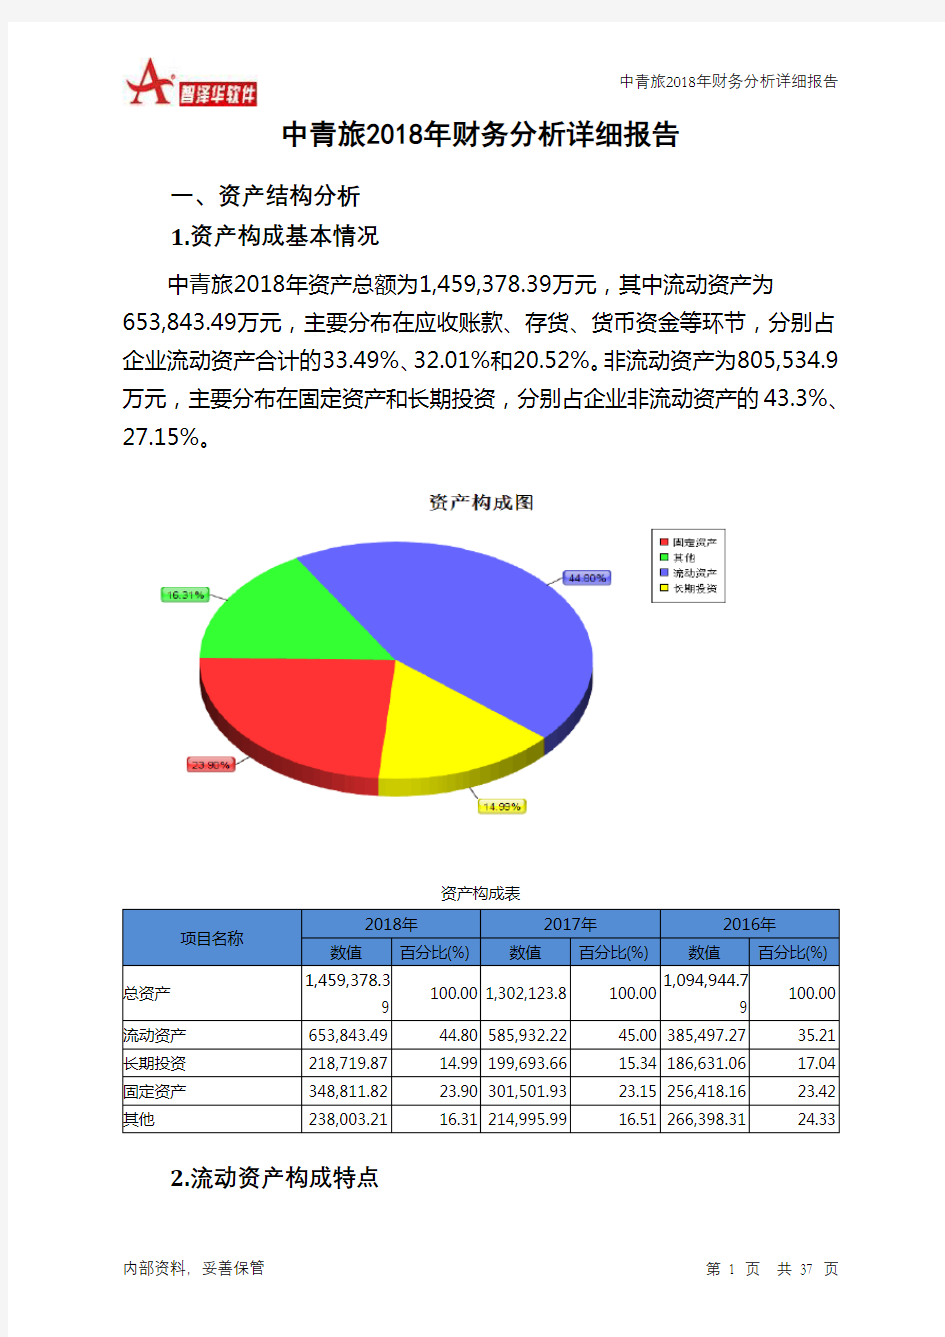 中青旅2018年财务分析详细报告-智泽华